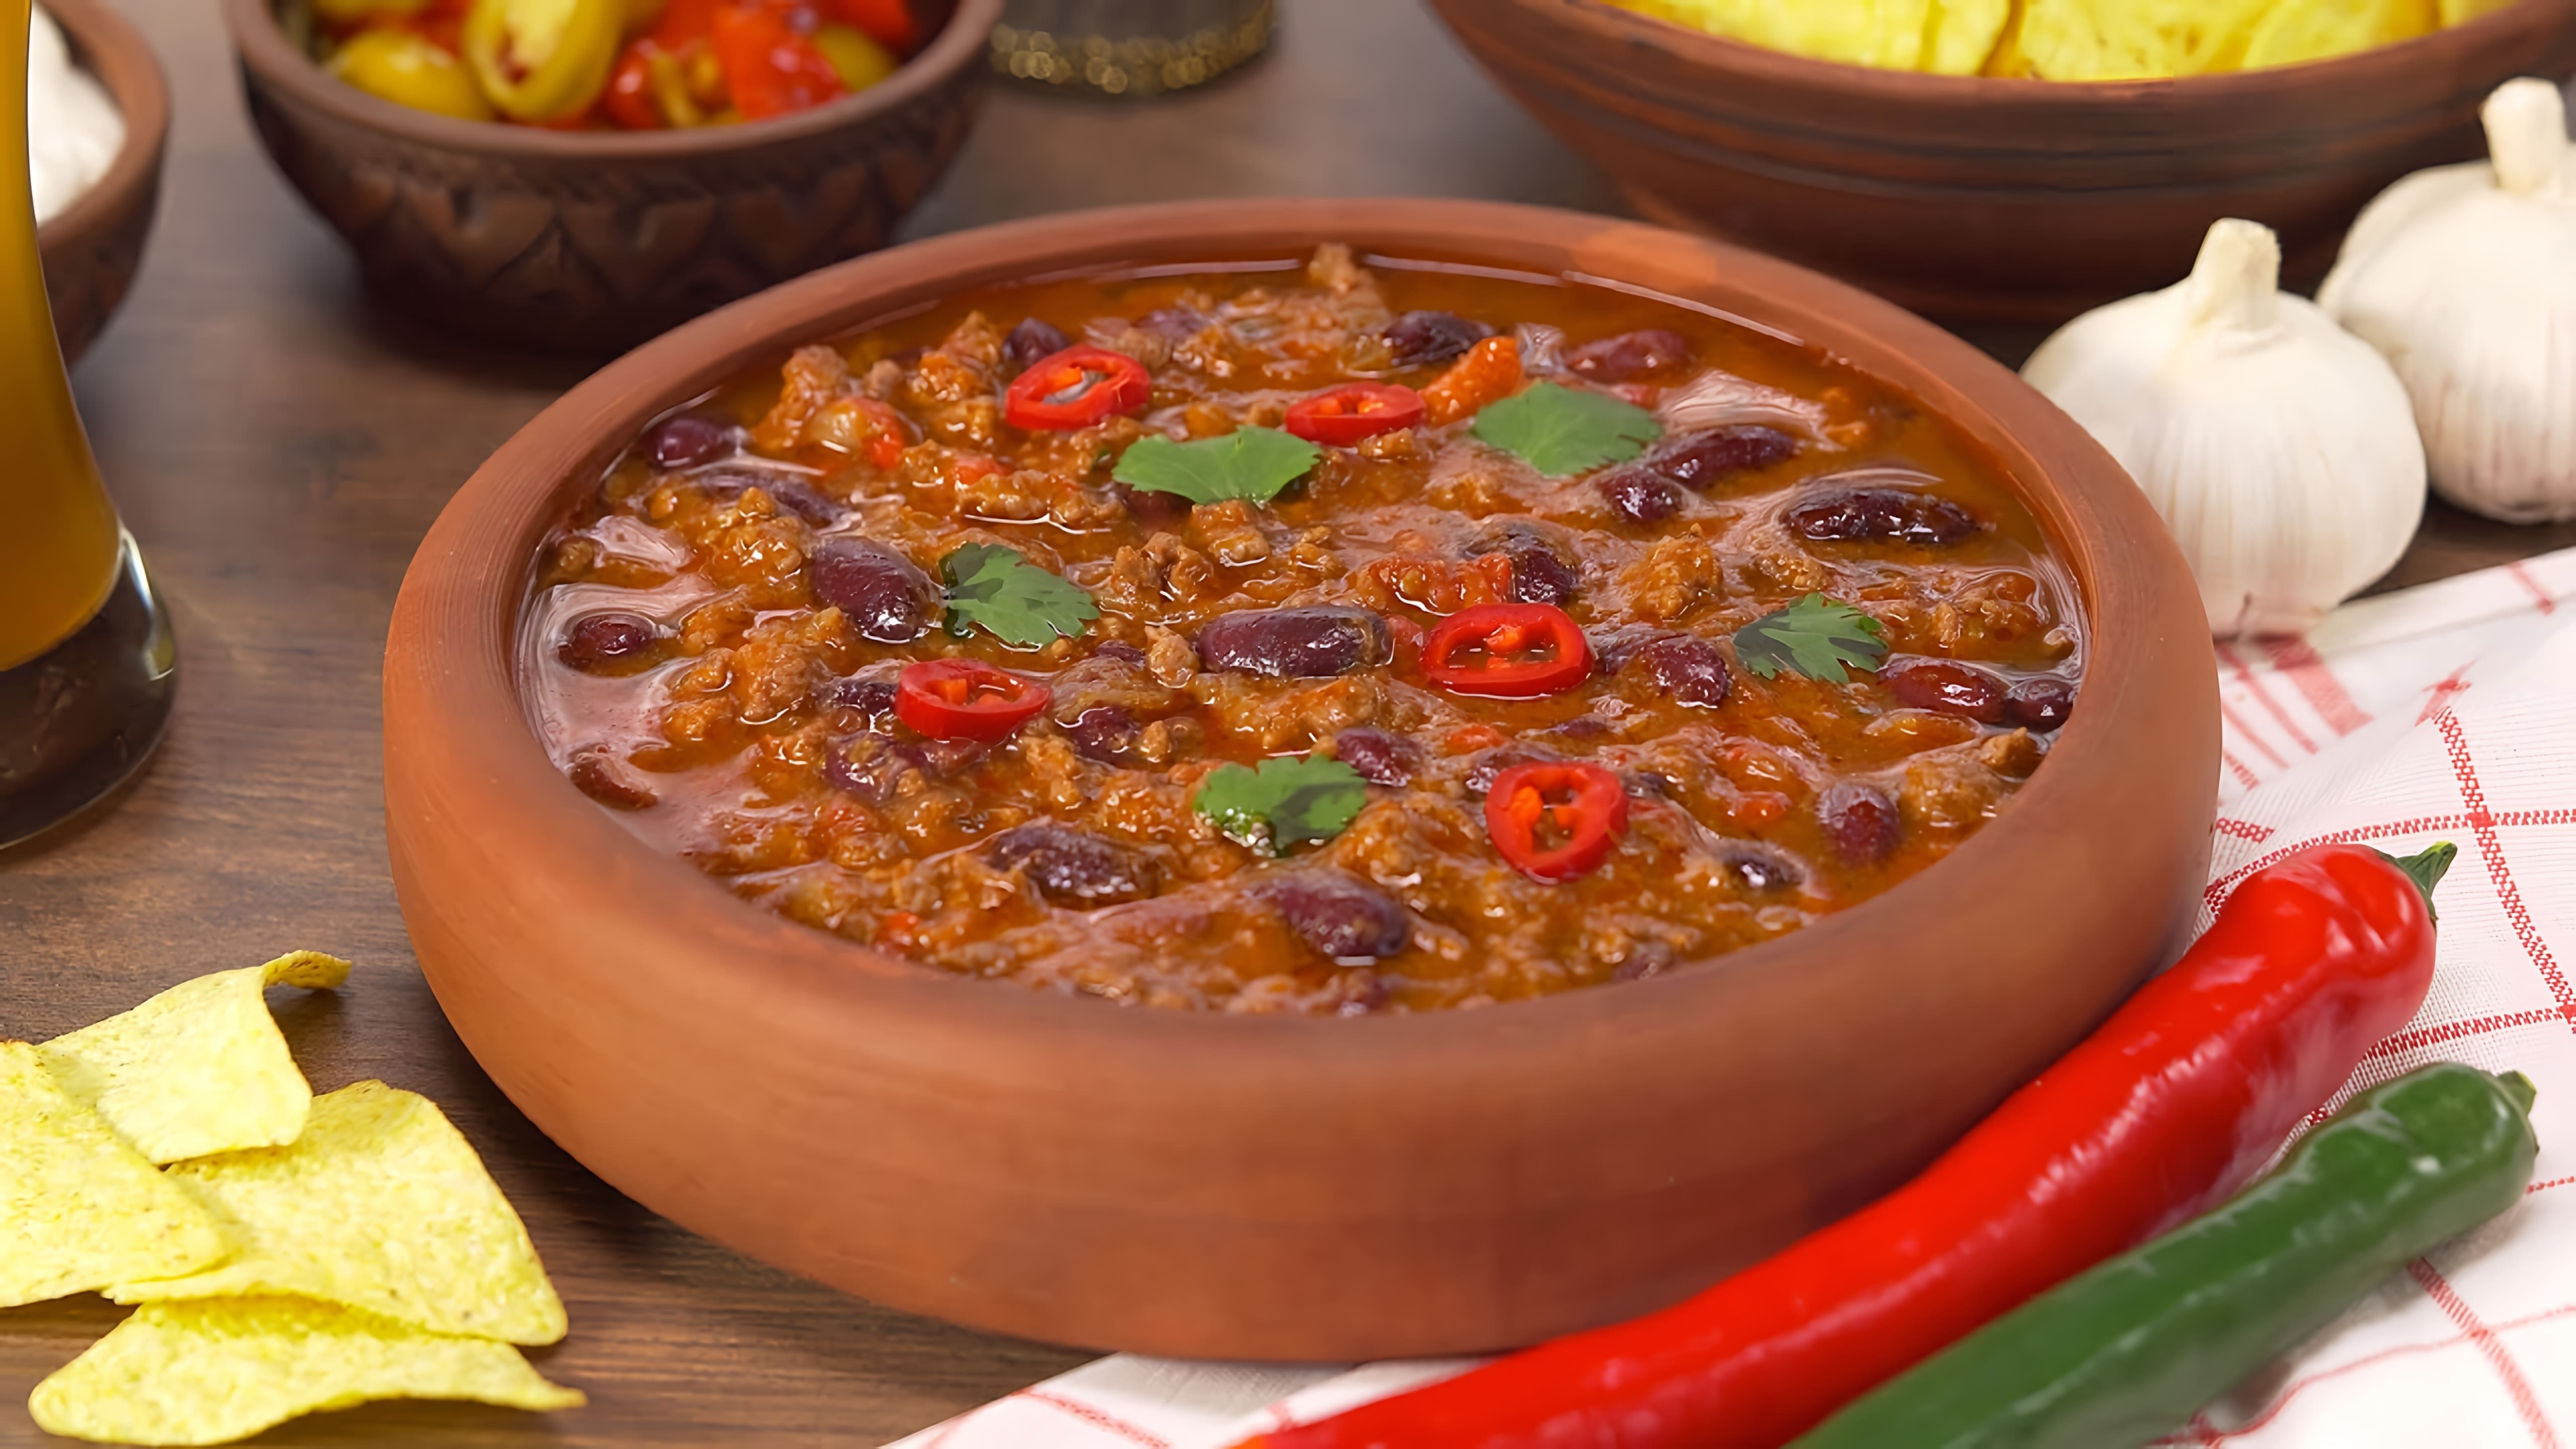 В данном видео демонстрируется процесс приготовления чили кон карне - традиционного мексиканского блюда из мясного фарша, фасоли и овощей